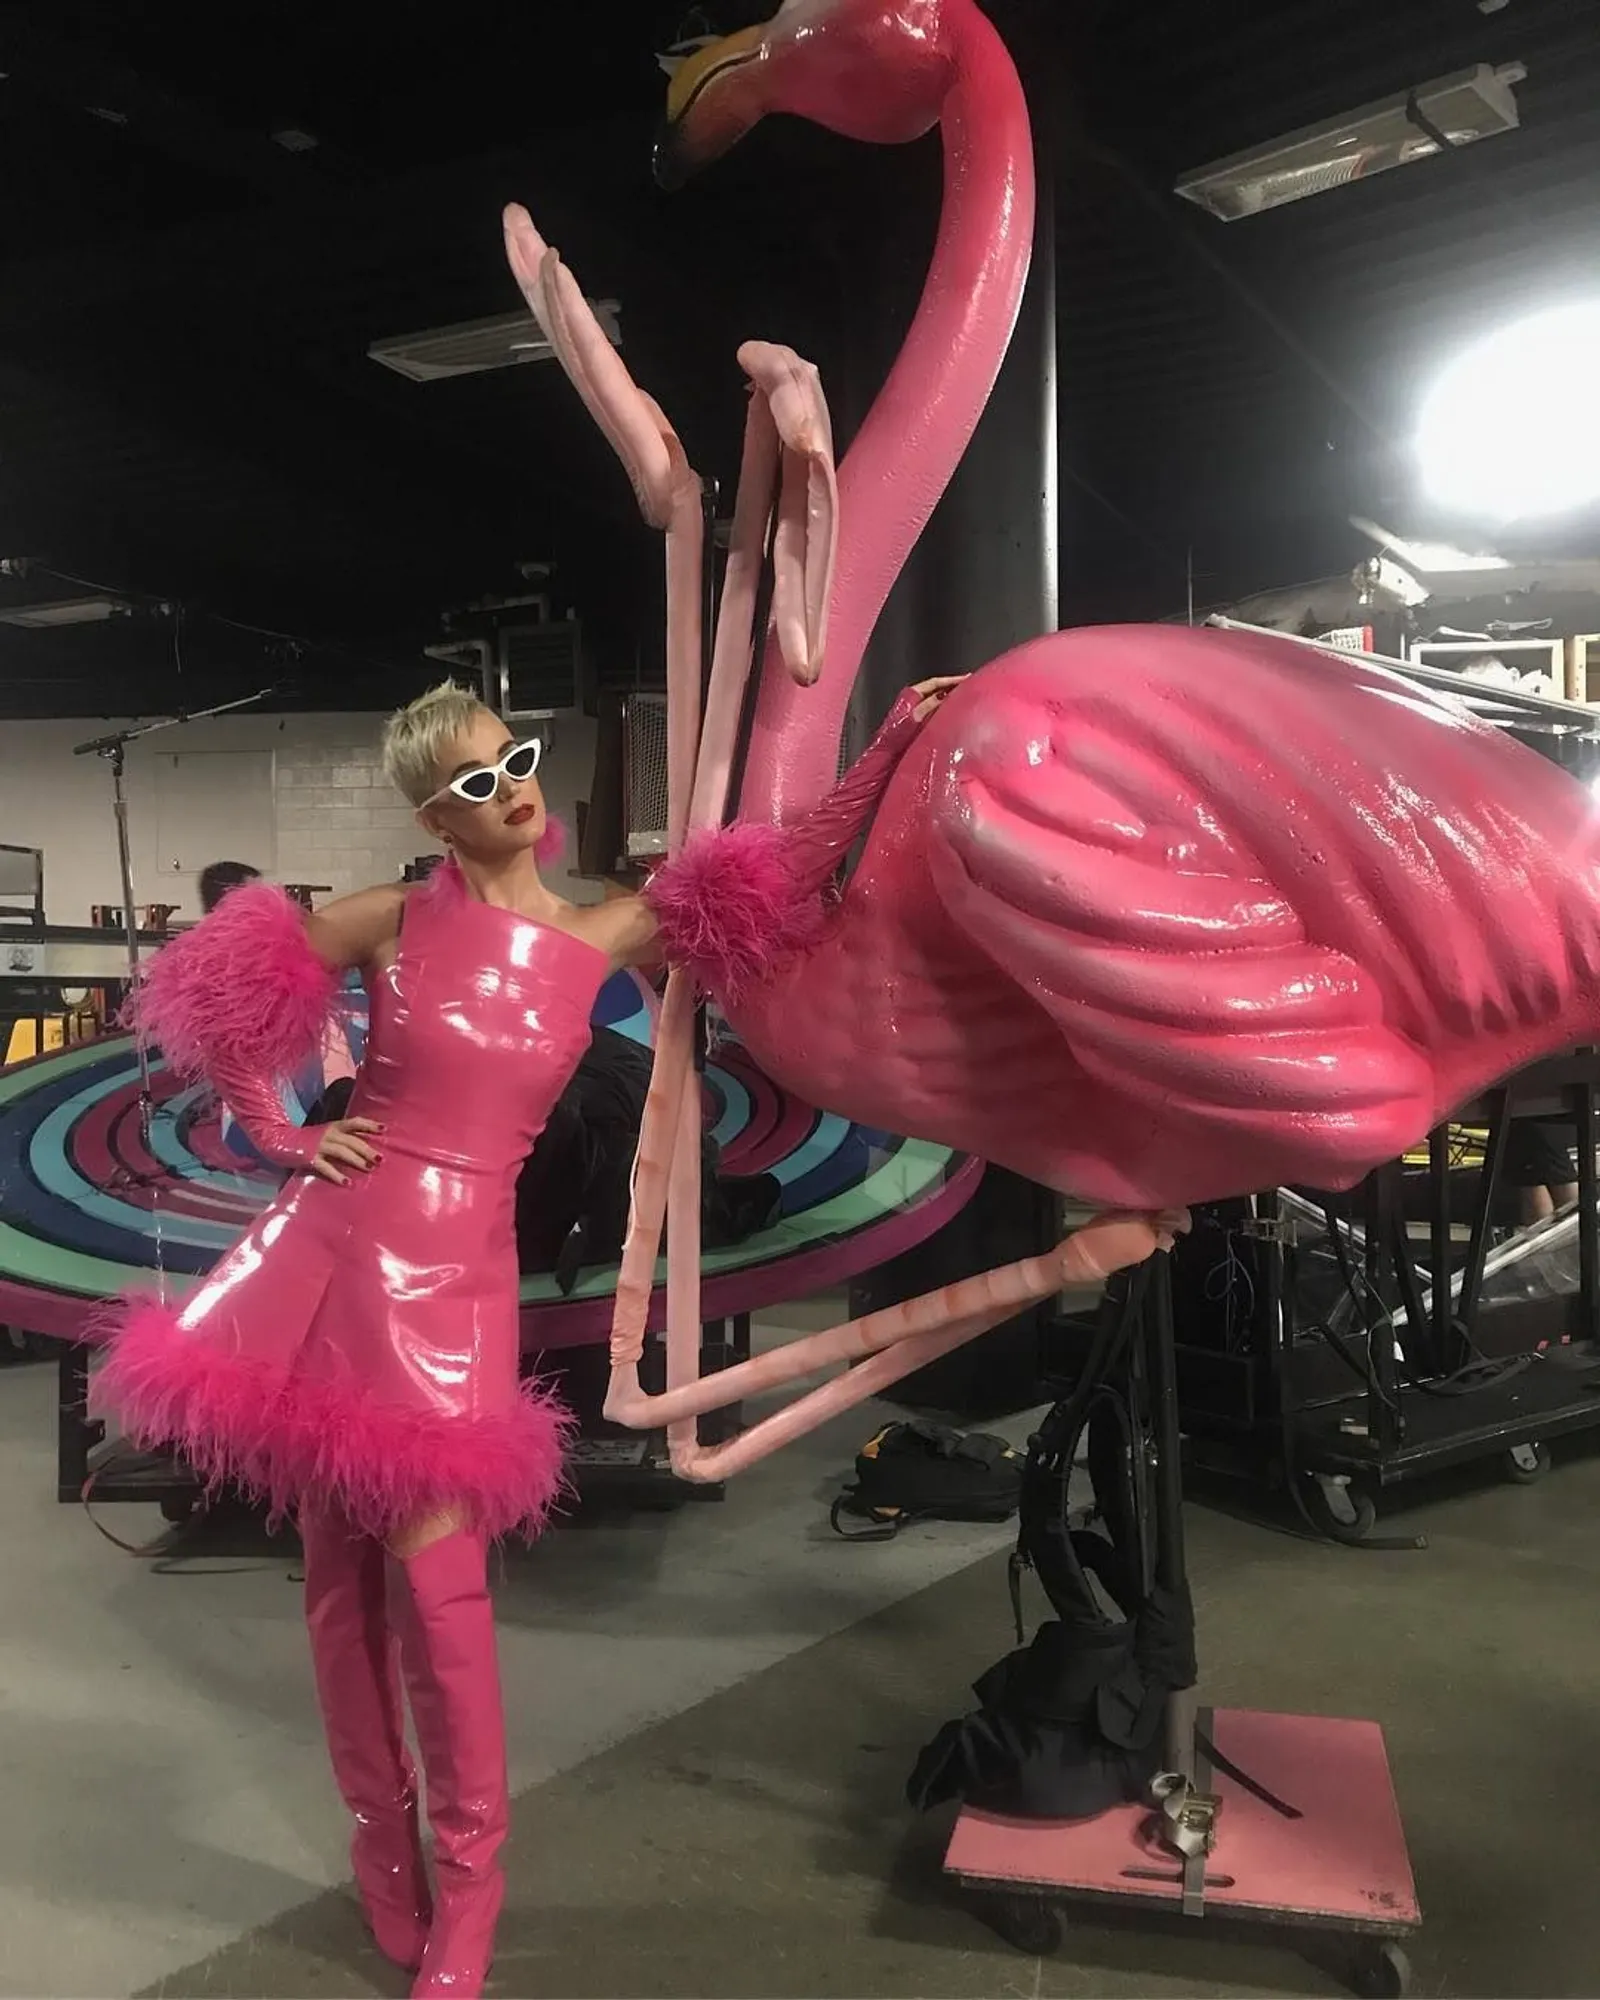 Gaun Pinata Hingga Futuristik, Ini Dia 7 Busana Fantastis Katy Perry